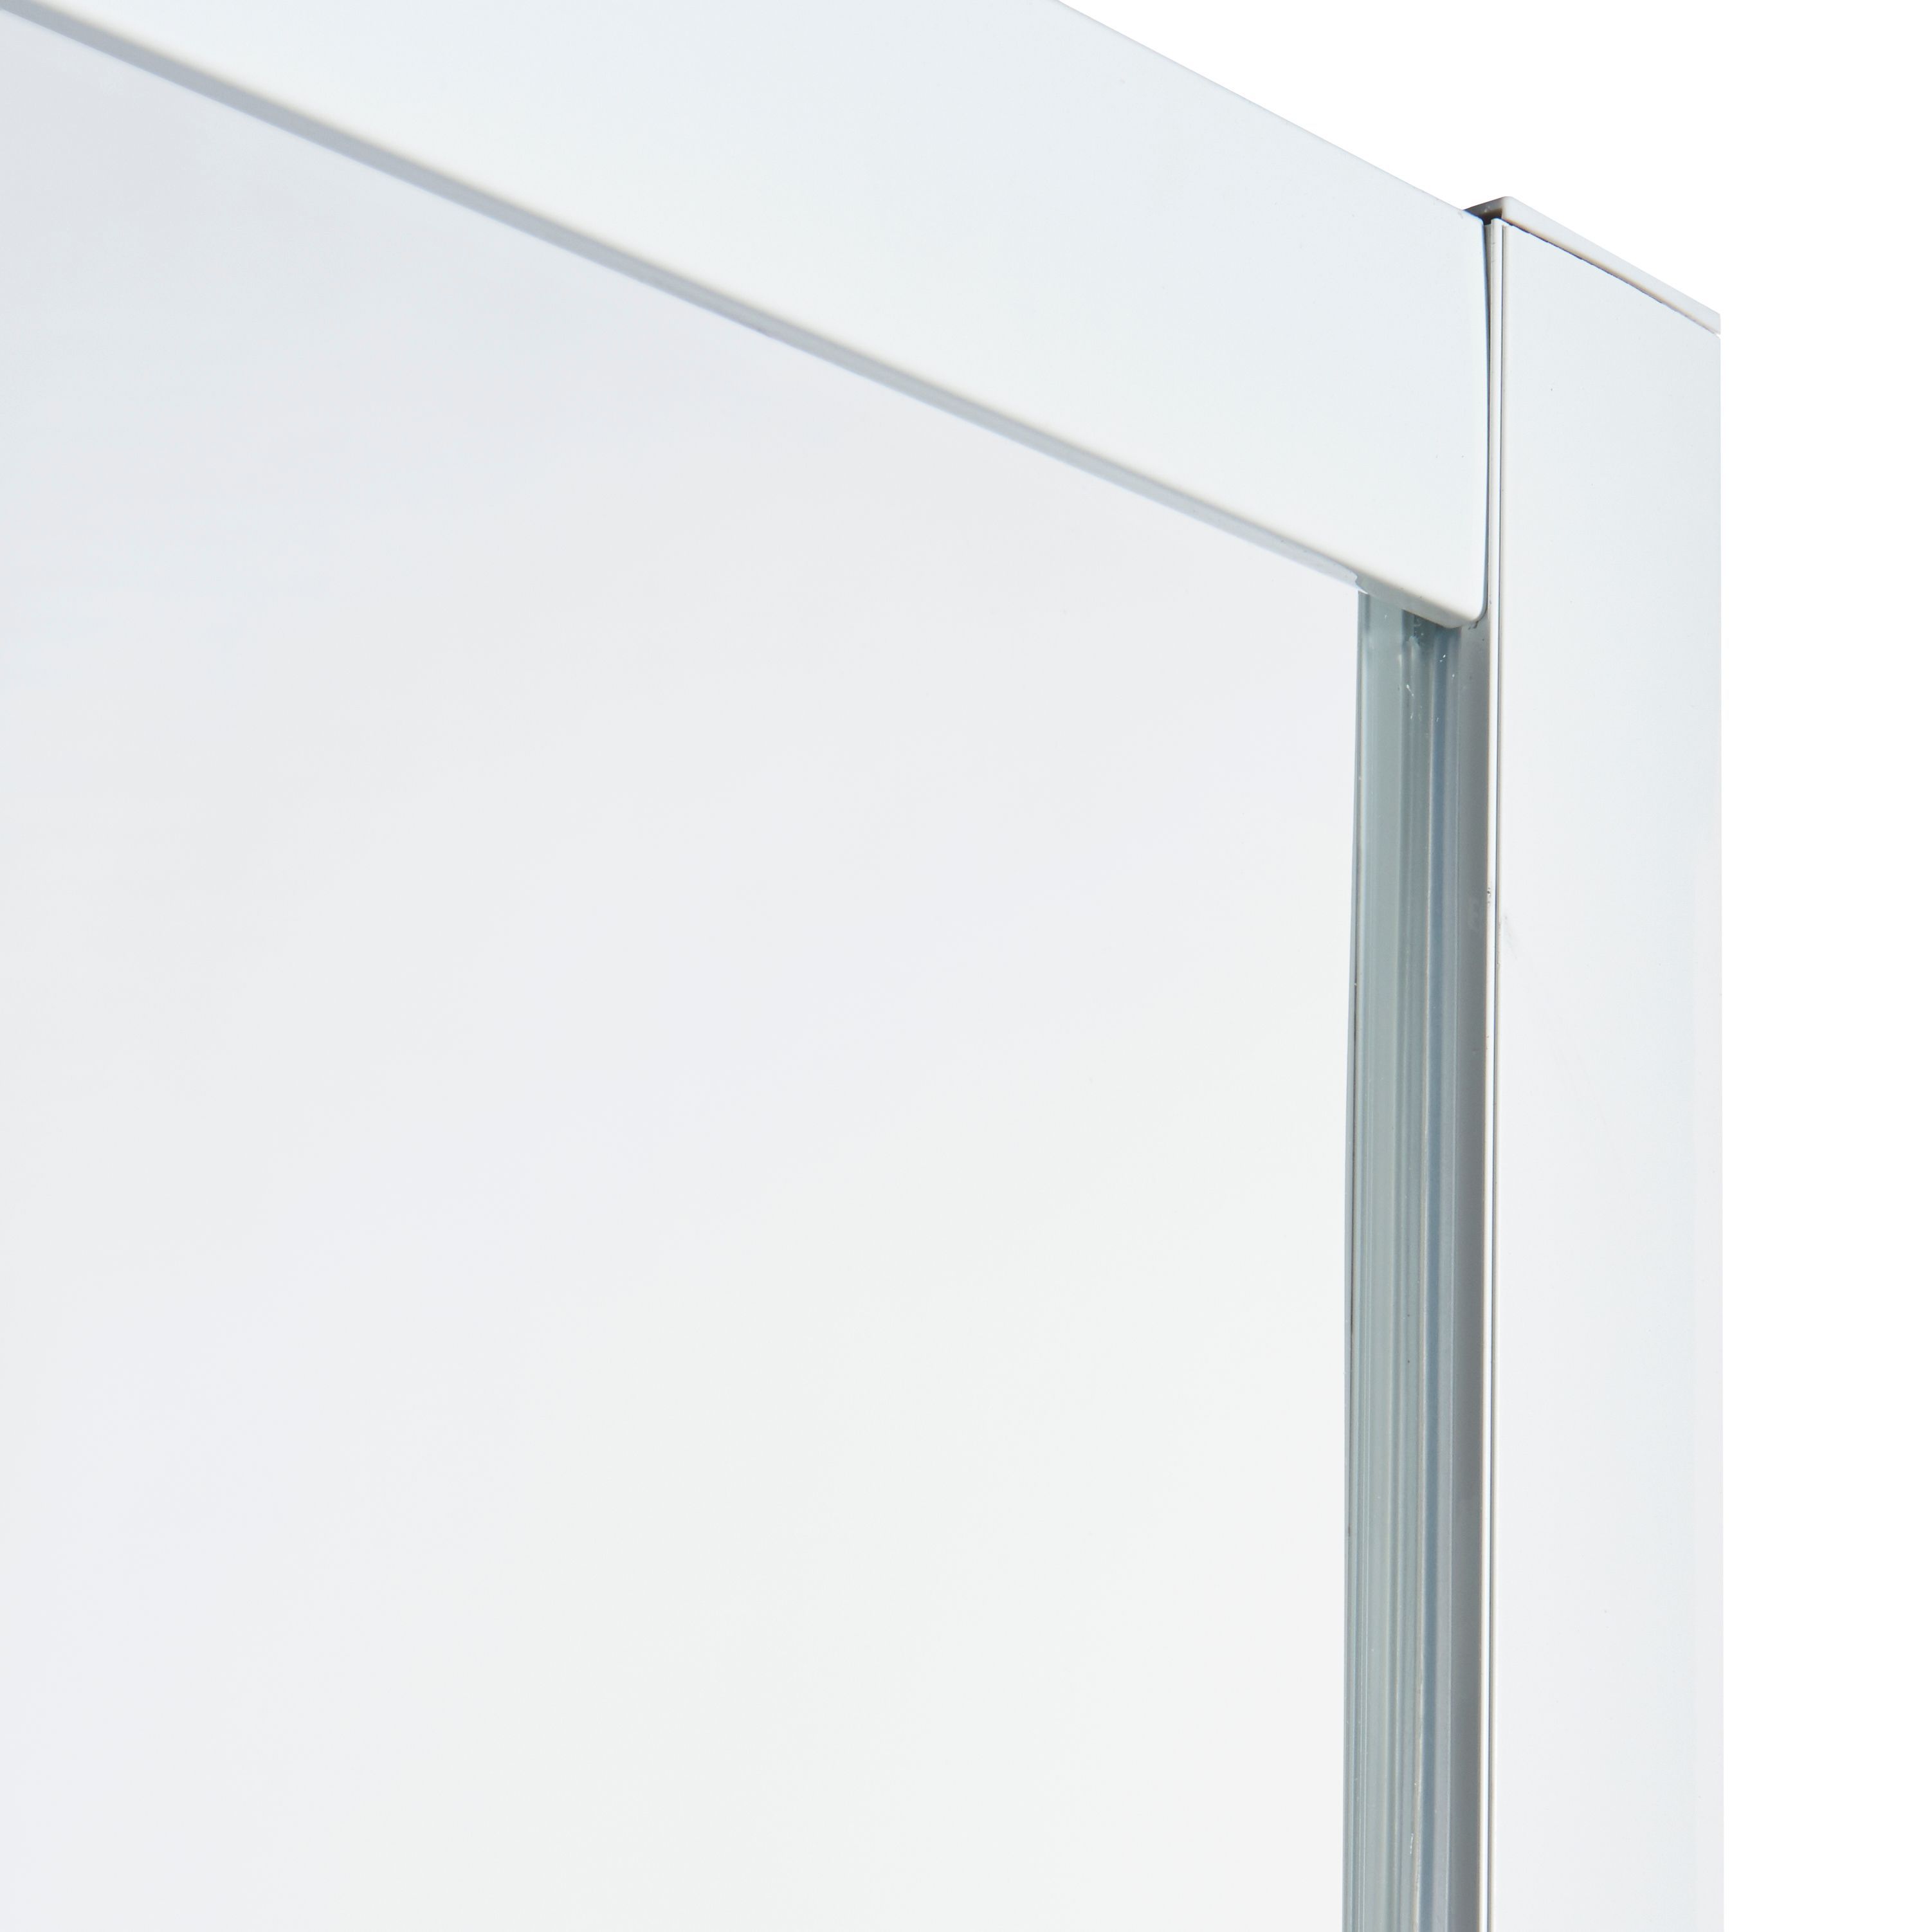 Cooke & Lewis Onega Frosted Bi-fold Shower Door (H)190cm (W)76cm